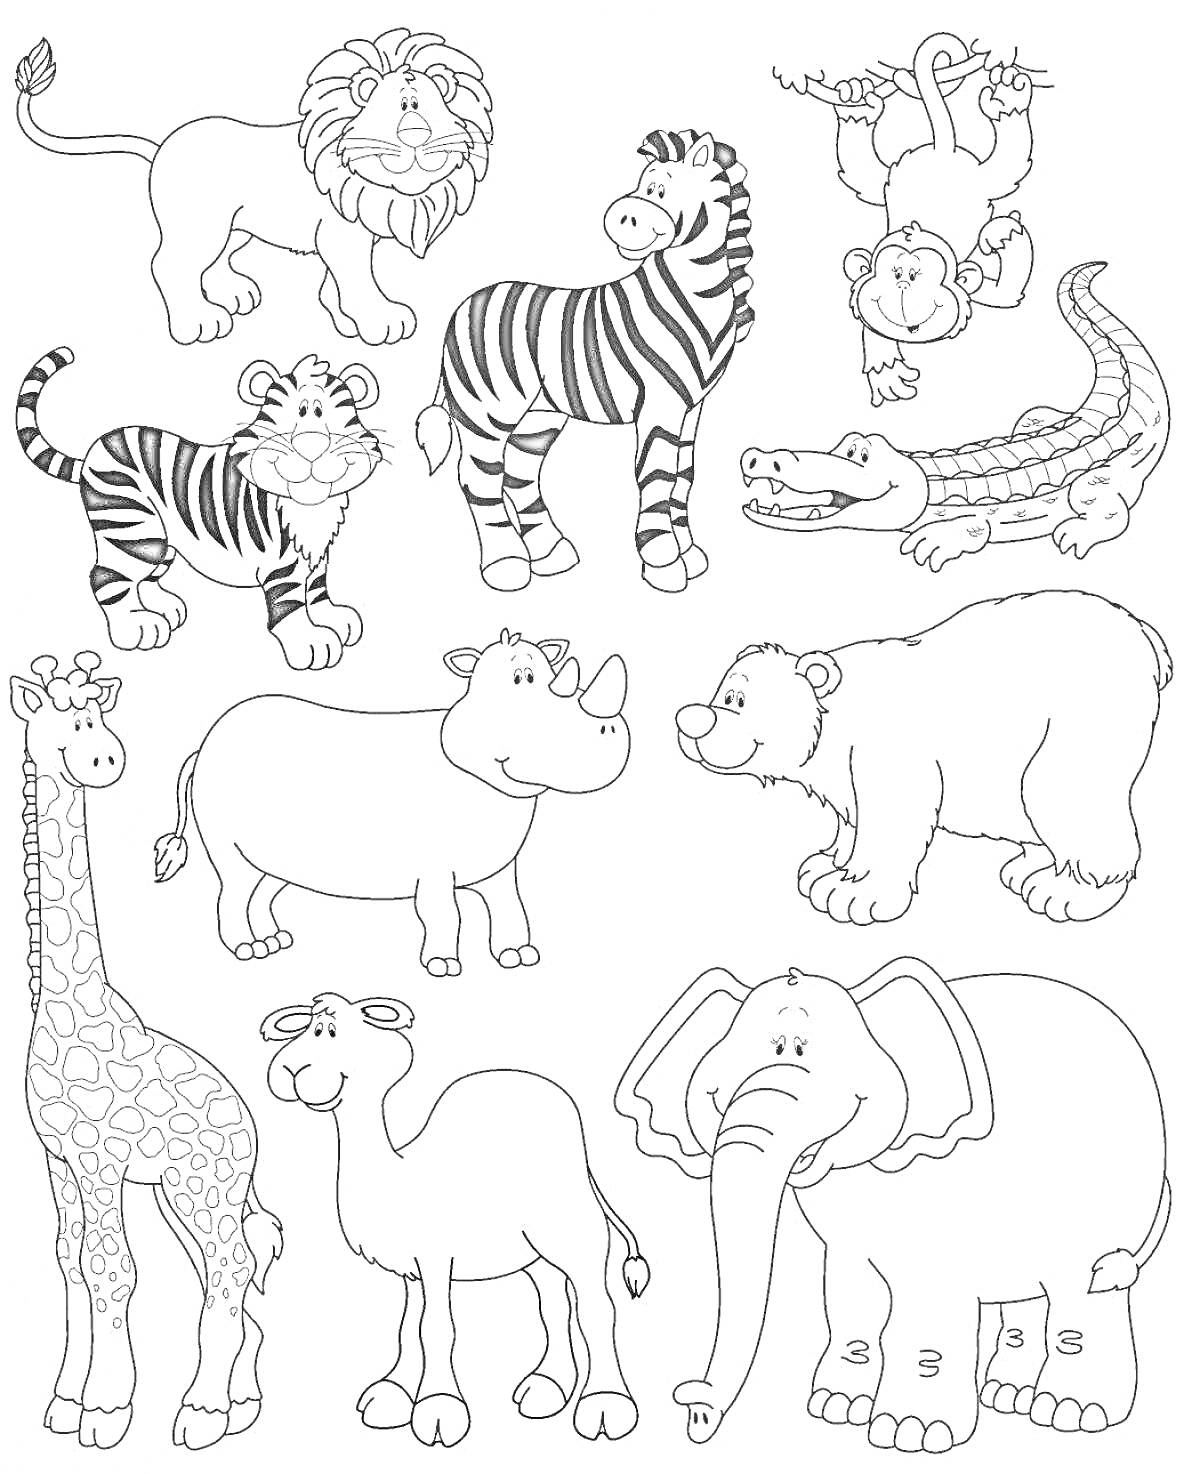 На раскраске изображено: Лев, Крокодил, Тигр, Носорог, Медведь, Верблюд, Слон, Животные, Жирафы, Зебры, Обезьяны